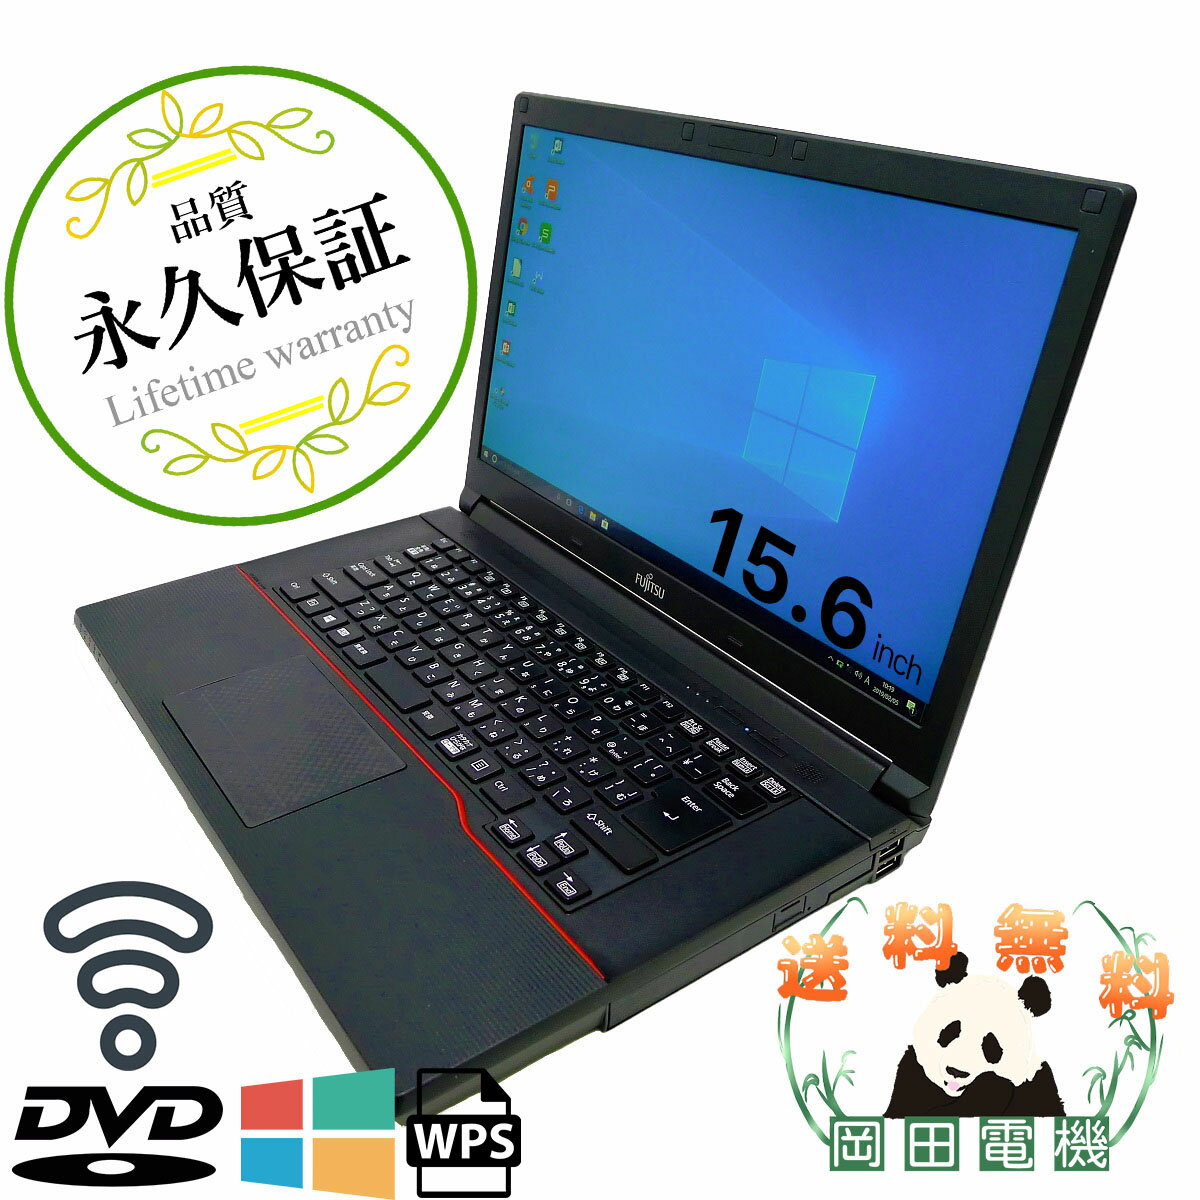 [オススメ]FUJITSU Notebook LIFEBOOK A744 Core i3 8GB HDD250GB DVD-ROM 無線LAN Windows10 64bitWPS Office 15.6インチ 中古 中古パソコン 【中古】 ノートパソコン 2